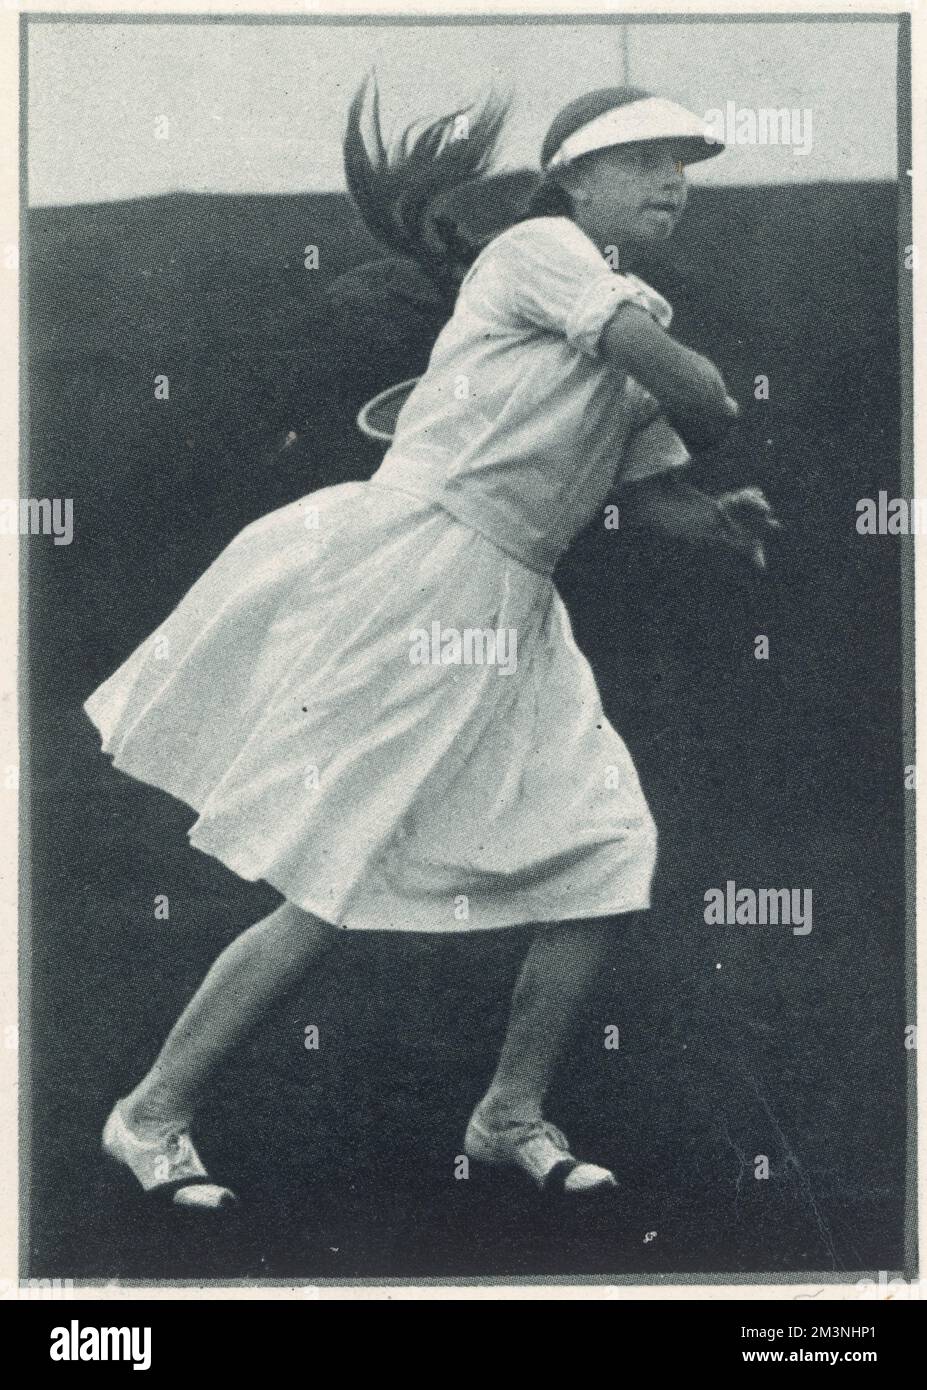 Helen Wills Moody (1905 - 1998), joueur de tennis américain et huit fois championne de Wimbledon, photographiée comme une jeune fille jouant dans la demi-finale du Championnat junior à Forest Hills et portant le célèbre abat-jour ou pare-soleil qu'elle a présenté sur le court de tennis sur gazon. 1933 Banque D'Images